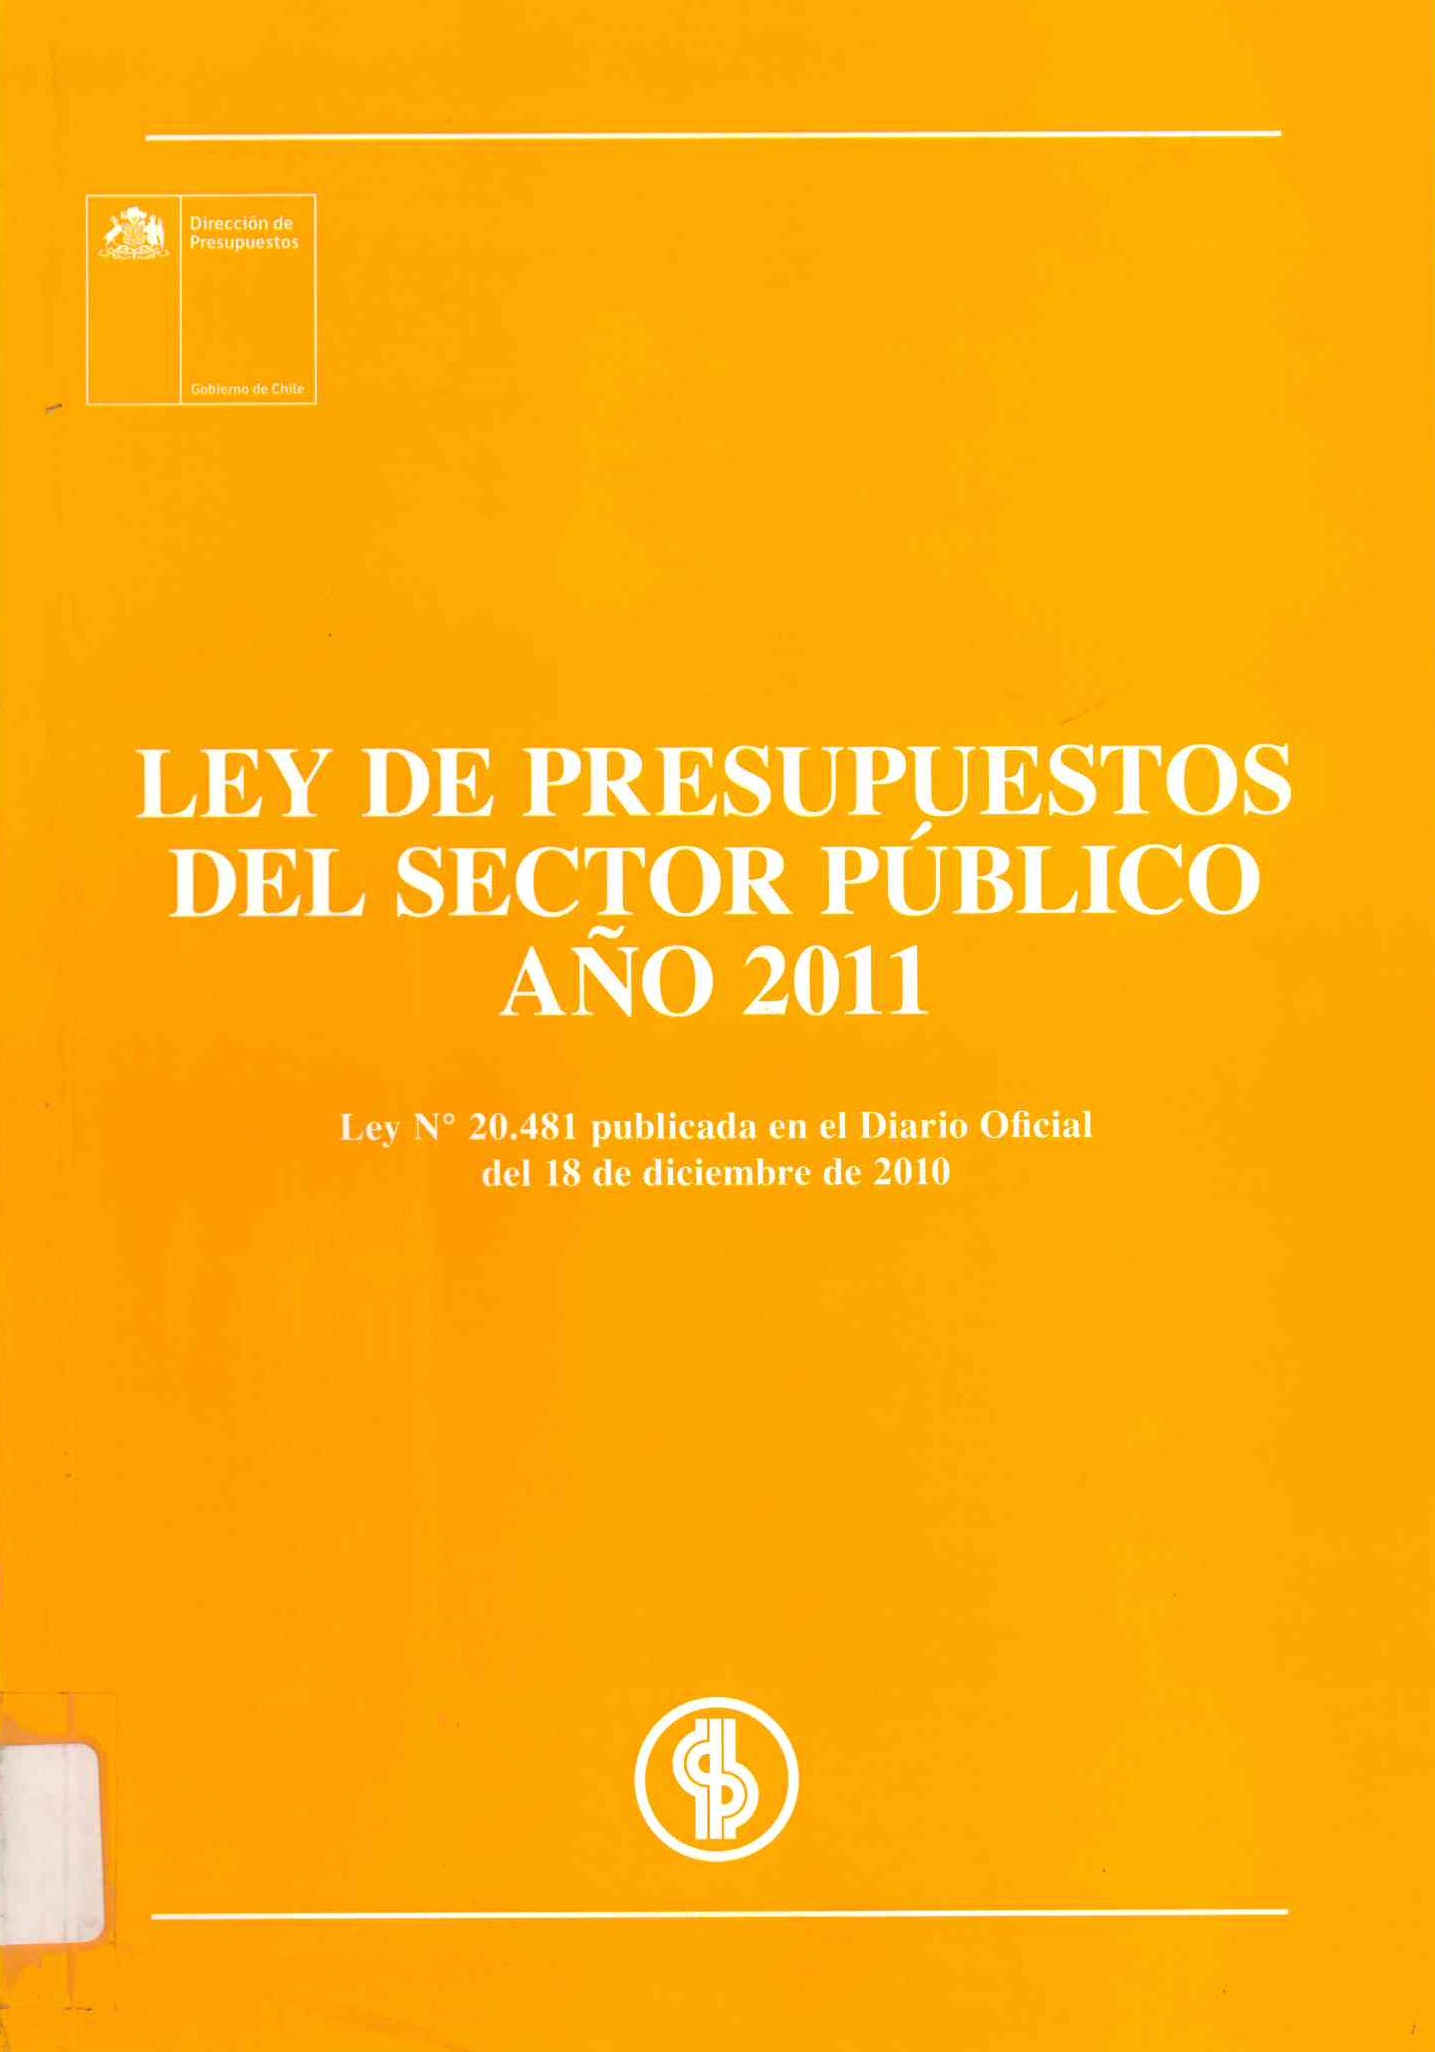 Ley de presupuestos del sector público año 2011. Ley N° 20.481. Publicada en el diario oficial de 18 de diciembre de 2010